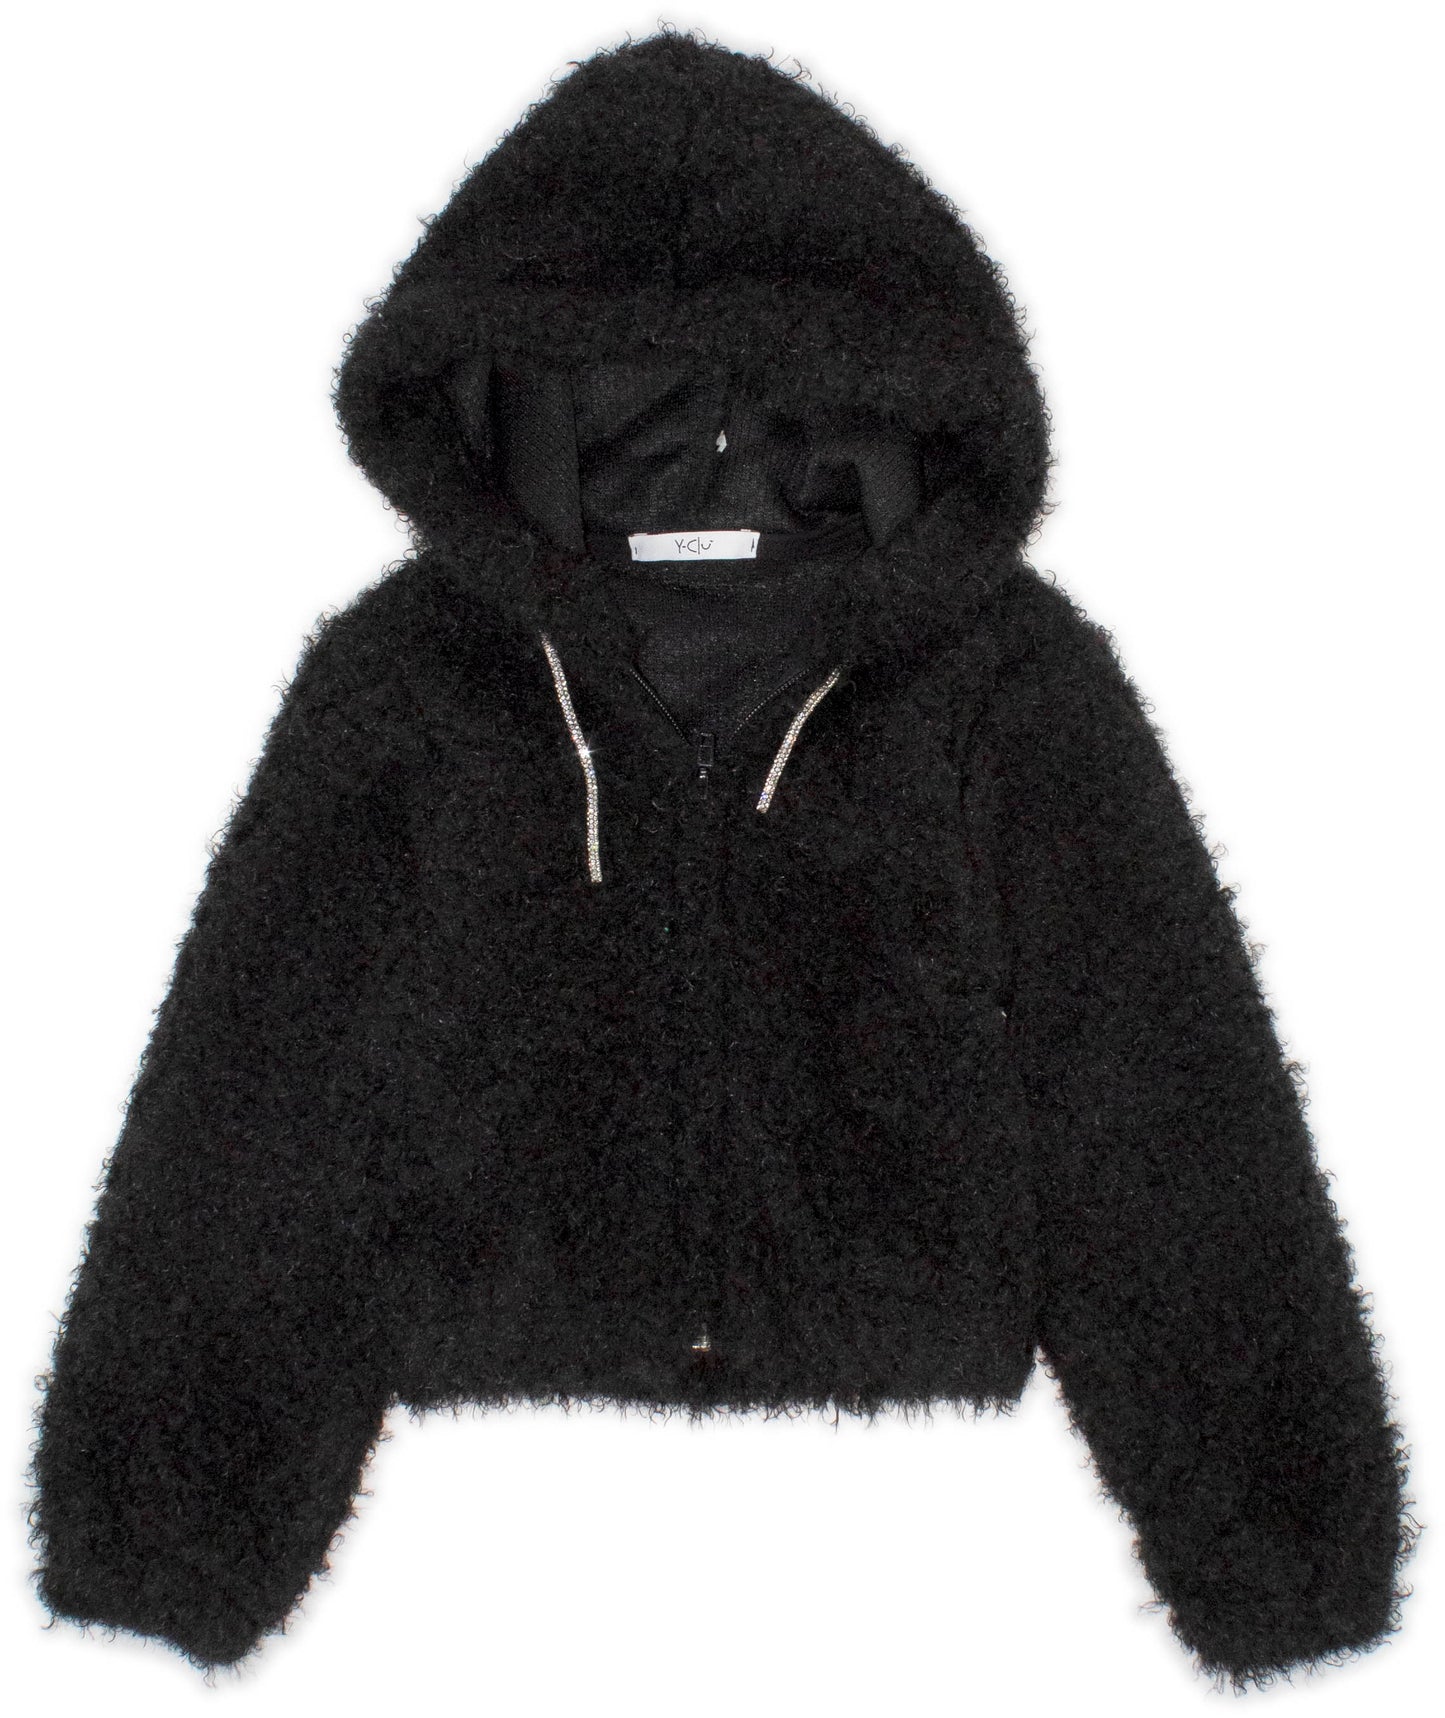 giacca , Giacca con zip e cappuccio ragazza color nero da 3anni a 7anni Y-Clù YB20463 - BabyBimbo 0-16, abbigliamento bambini